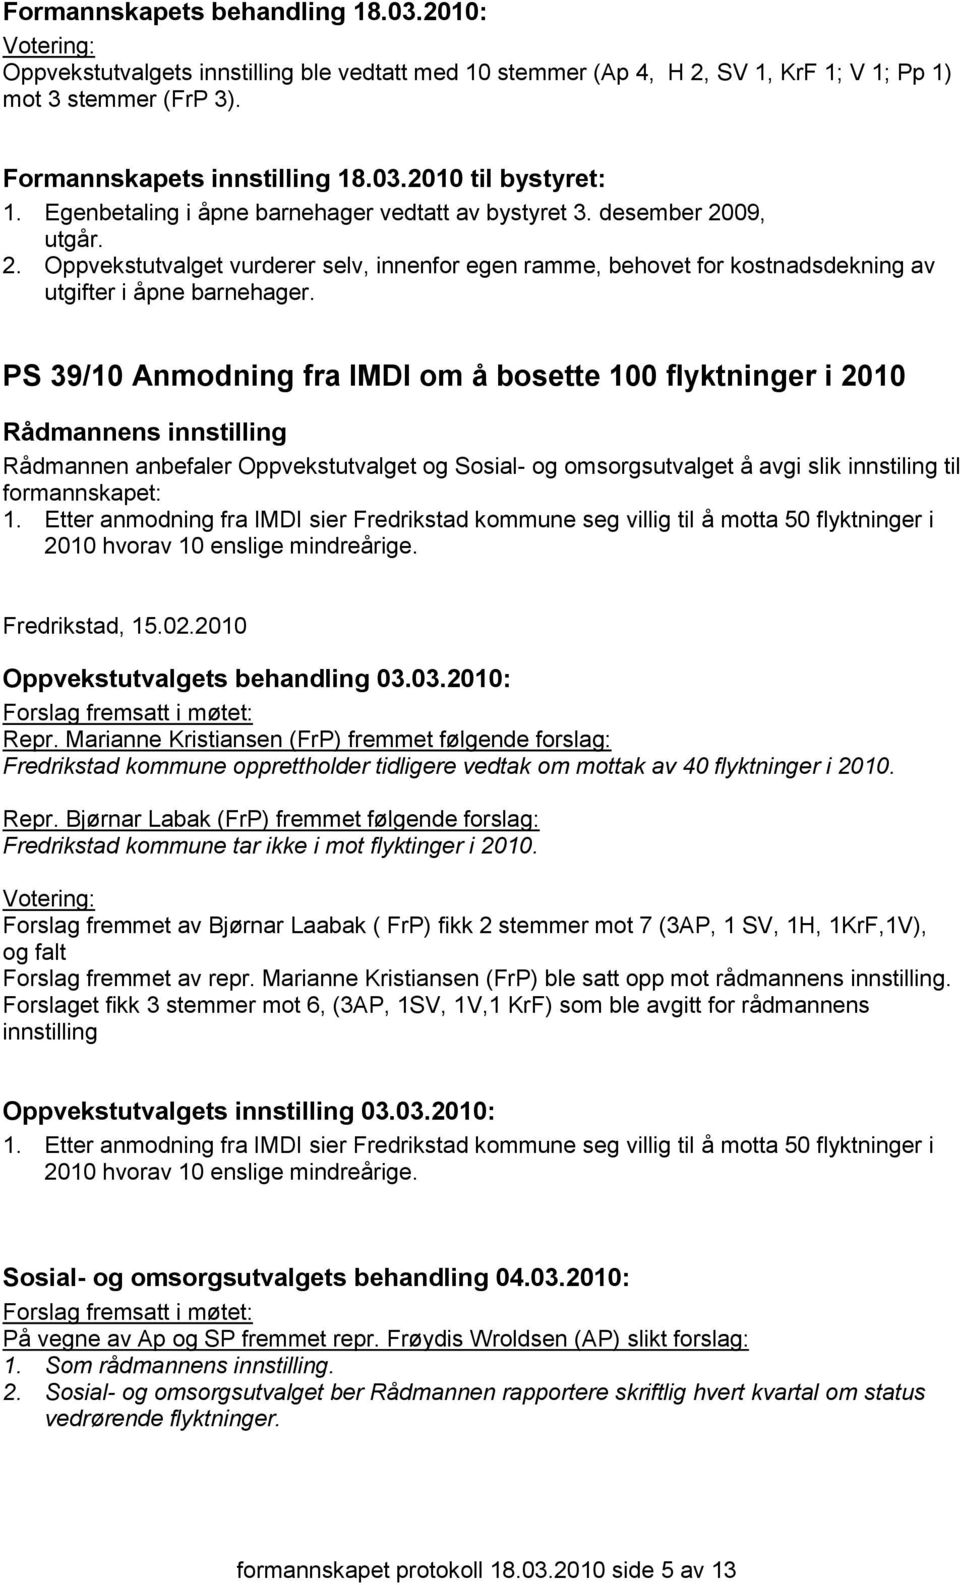 Etter anmodning fra IMDI sier Fredrikstad kommune seg villig til å motta 50 flyktninger i 2010 hvorav 10 enslige mindreårige. Fredrikstad, 15.02.2010 Oppvekstutvalgets behandling 03.